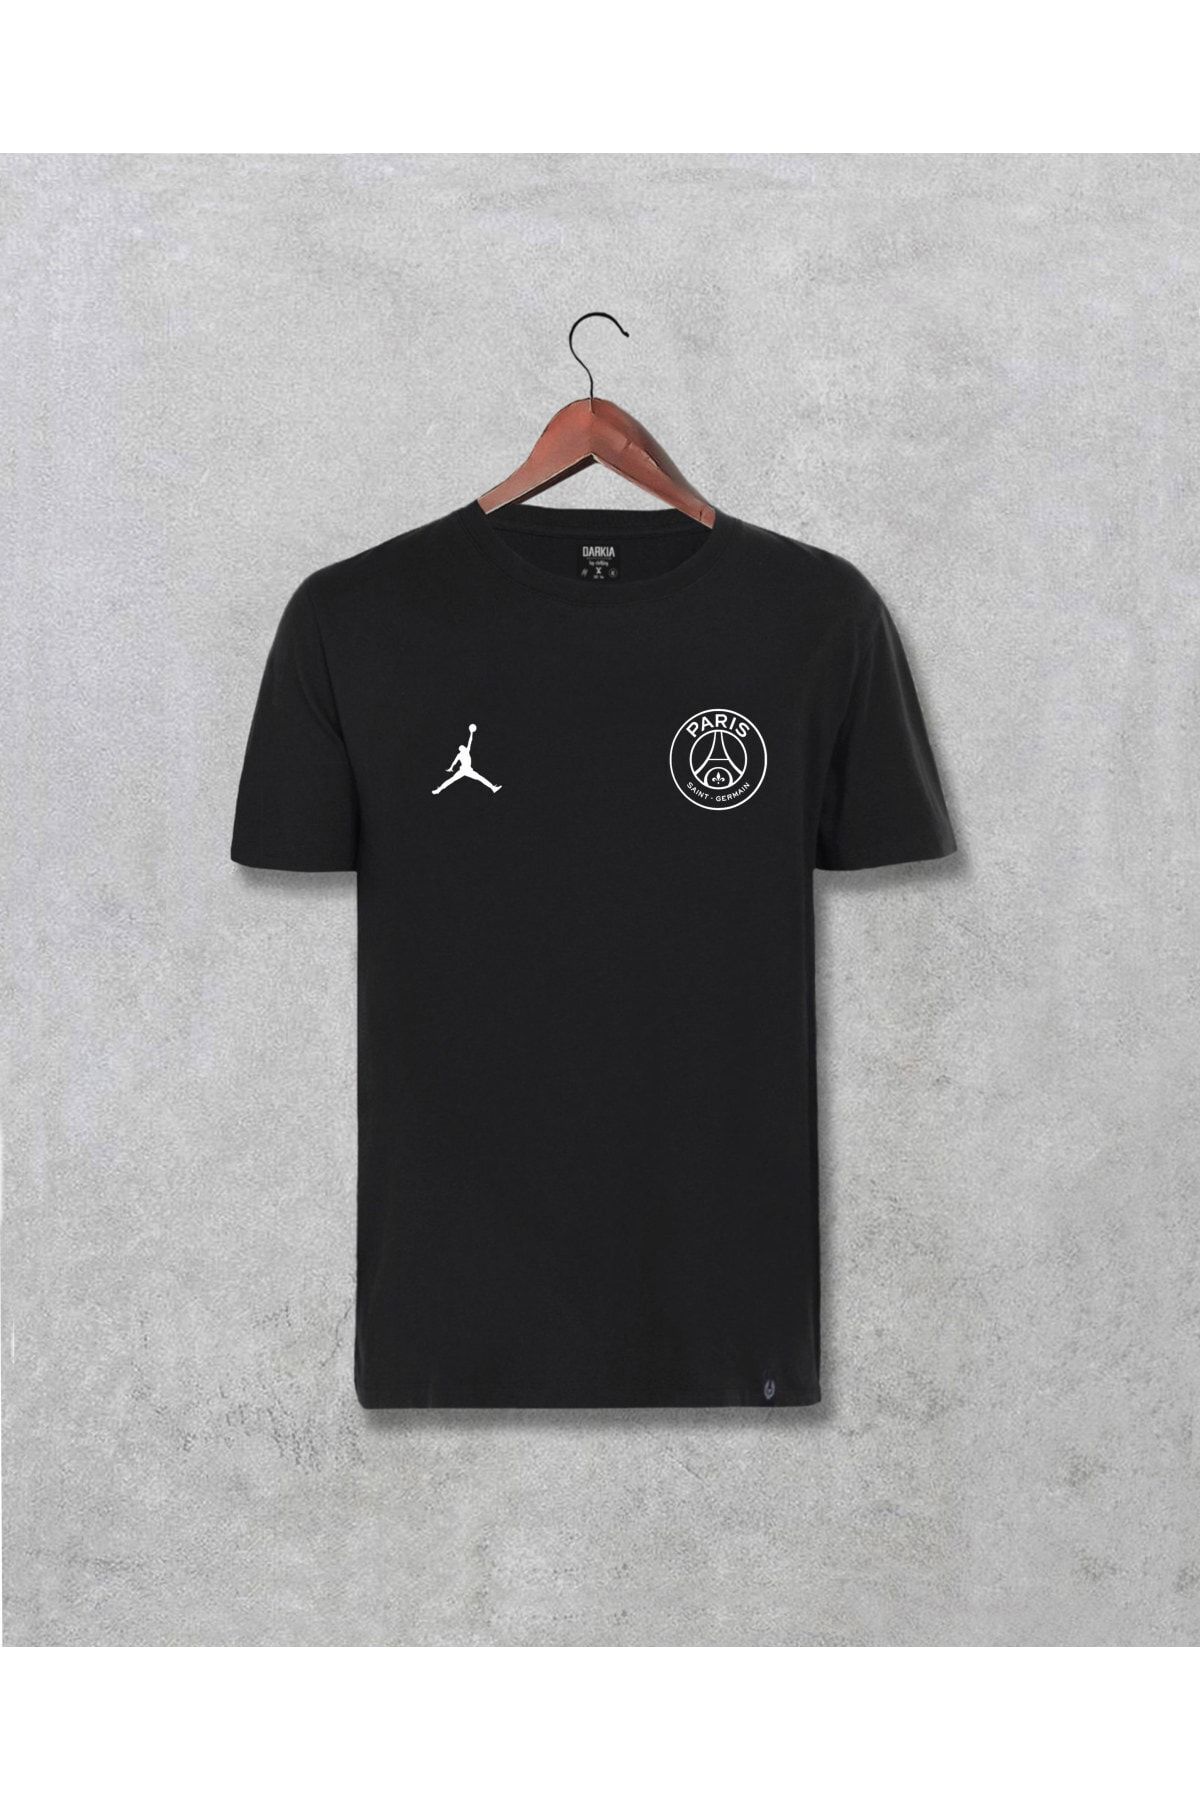 Darkia Unisex SiyahParis Saint Germain Psg Jordan Baskılı Tasarım Tişört